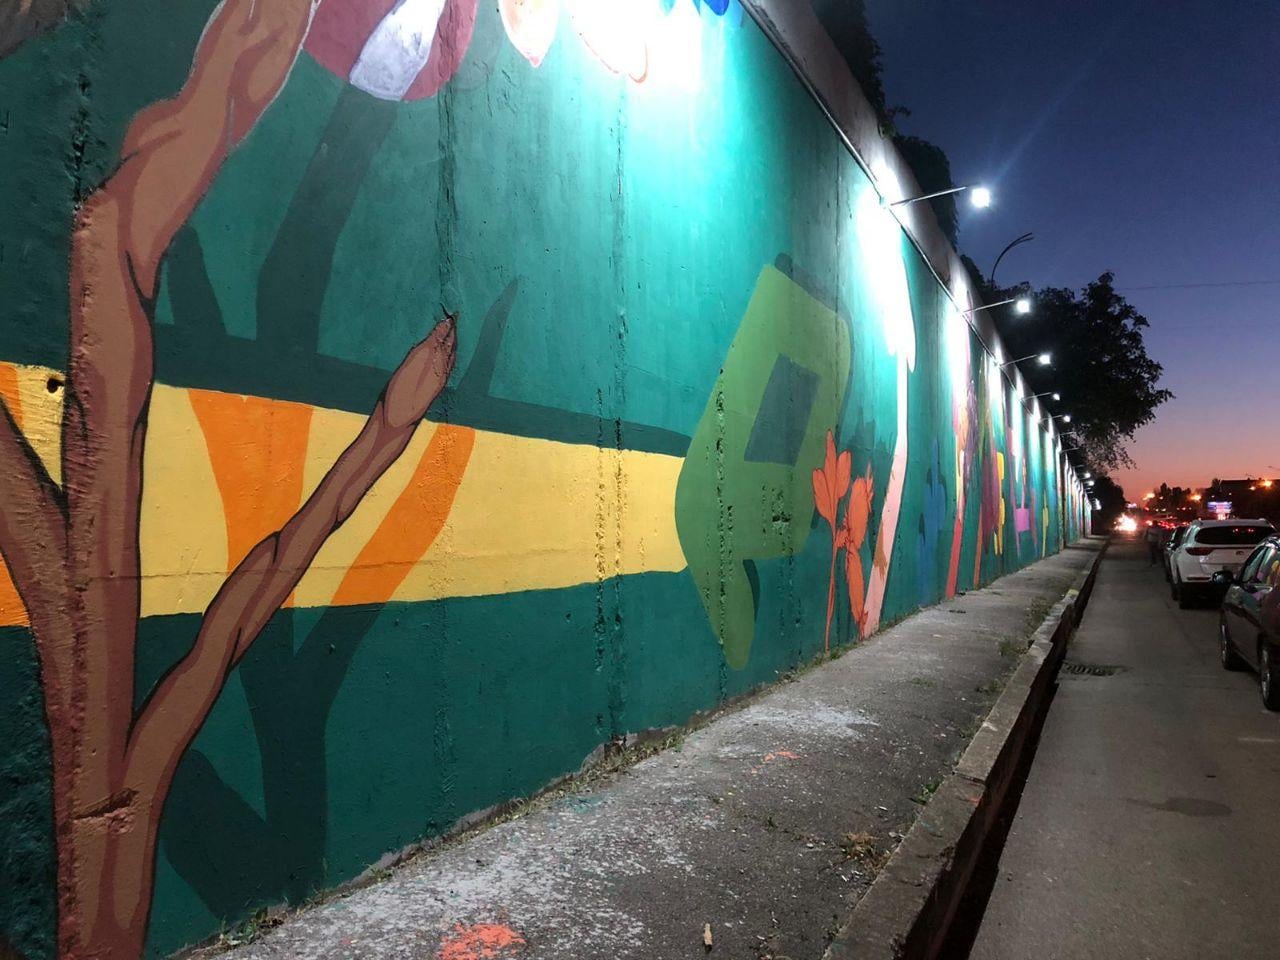 Pictura murală de sub podul de la Telecentru a fost finalizată. Costul estimativ al proiectului este de 300 de mii de lei